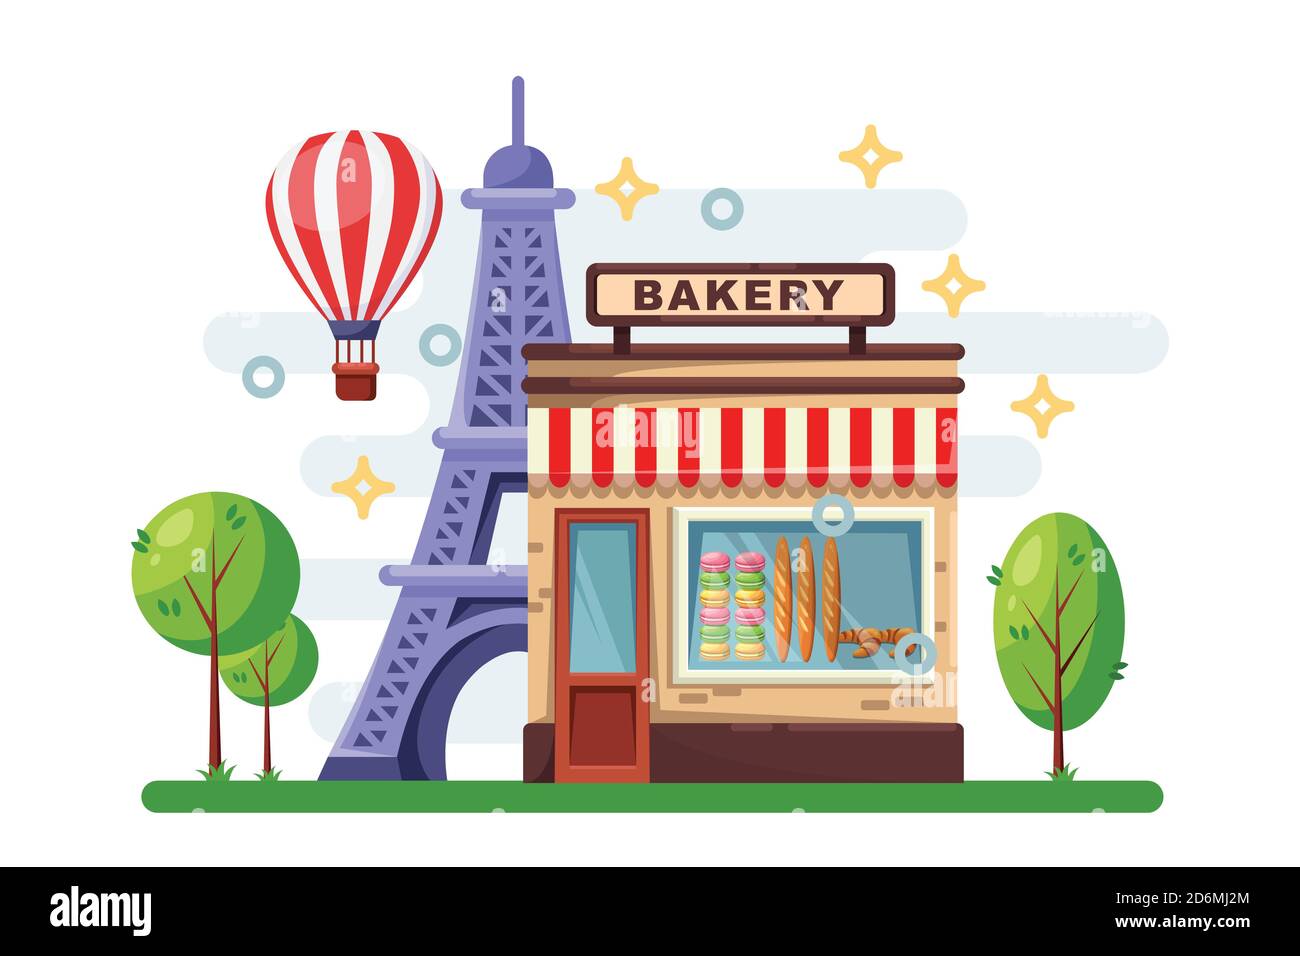 Edificio di panetteria francese con baguette, macaron, croissant alla finestra del negozio. Il paesaggio urbano di Parigi con la Torre Eiffel e il caffè di strada. Immagine piatta vettoriale. Illustrazione Vettoriale